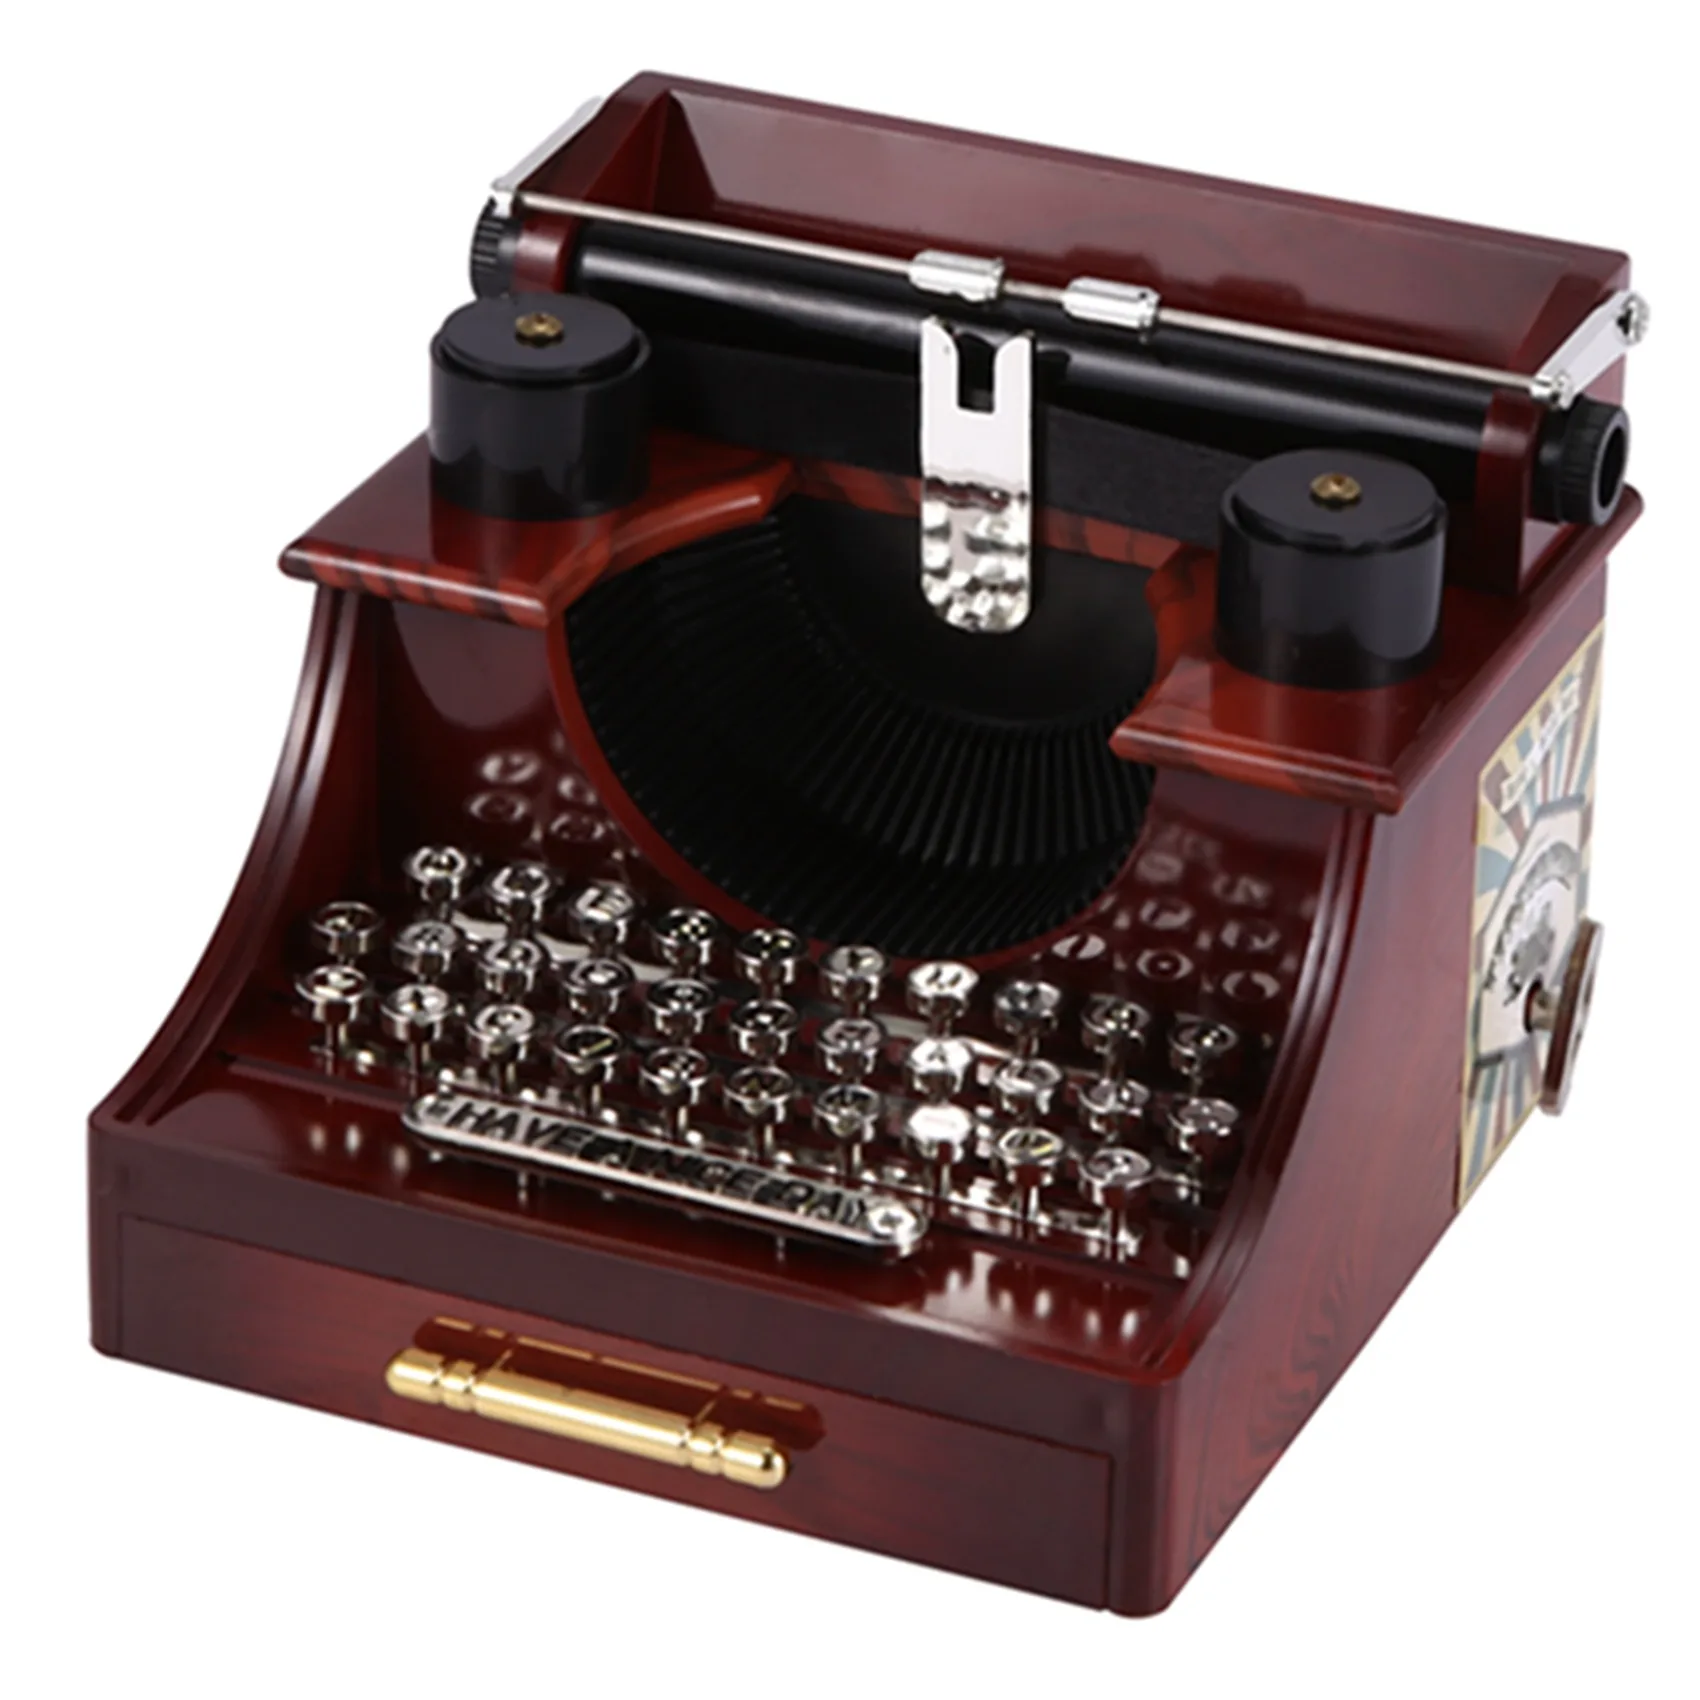  Mini Vintage Style, Typewriter for Kids Typewriter